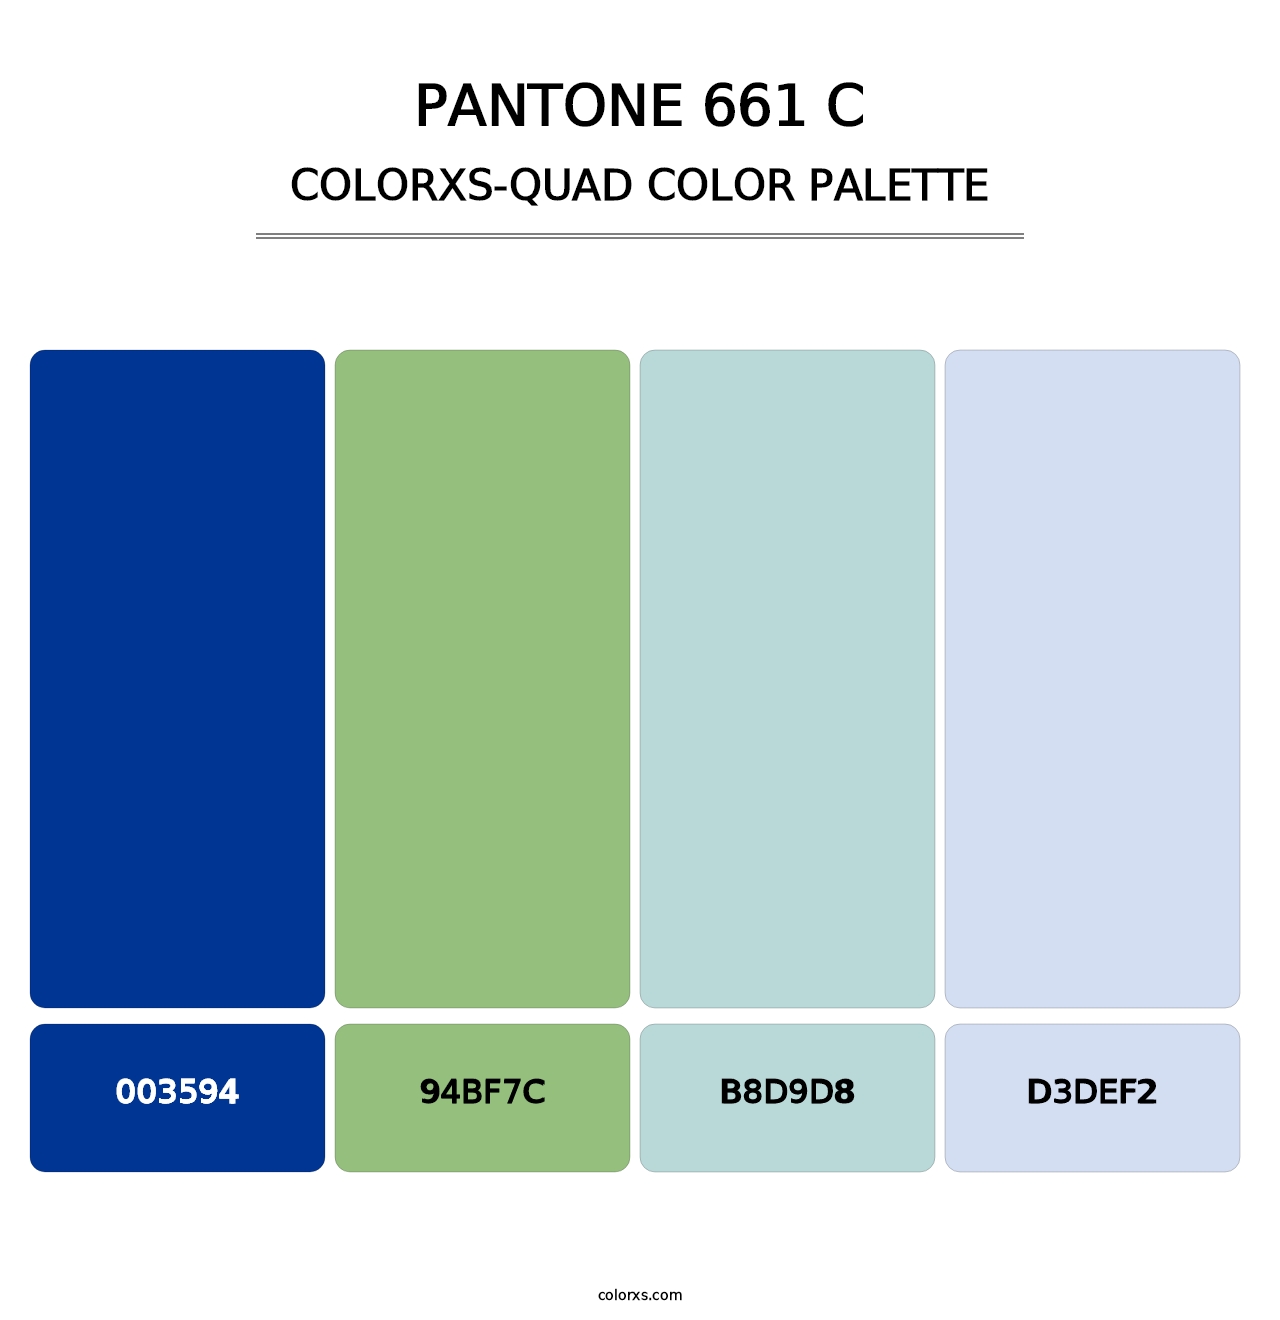 PANTONE 661 C - Colorxs Quad Palette